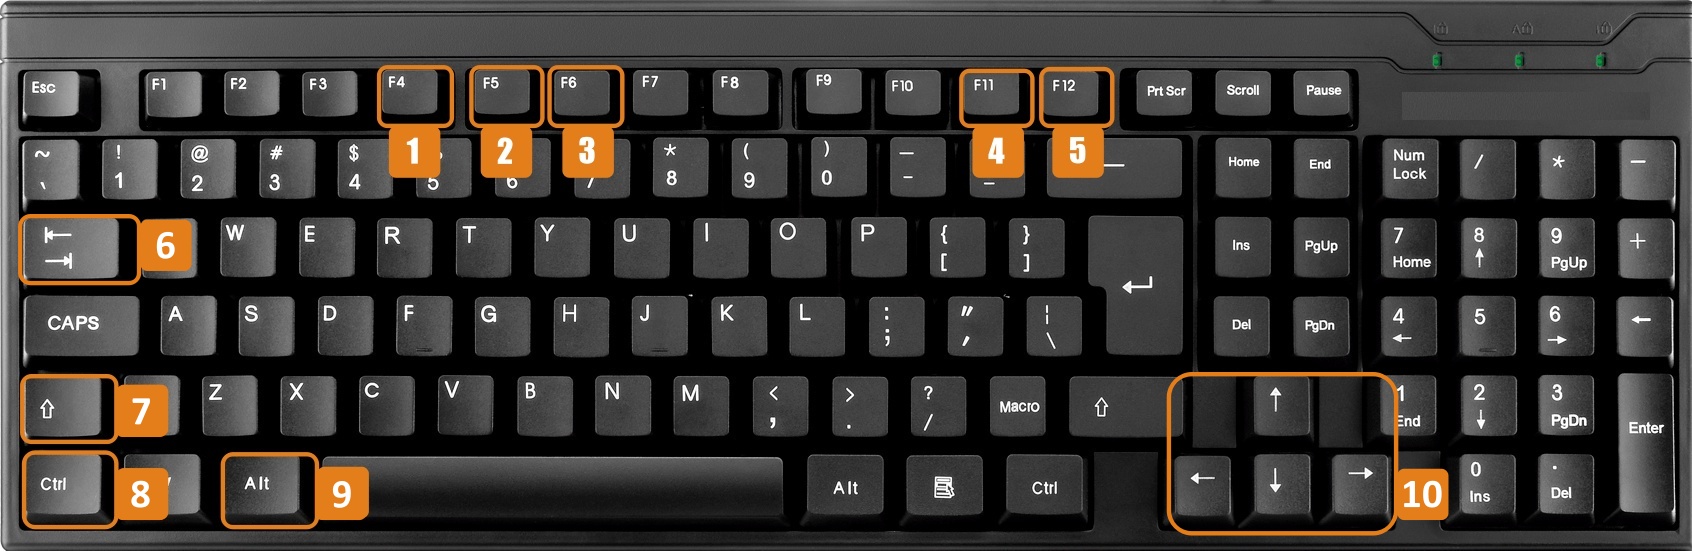 teclado_original_1.jpg